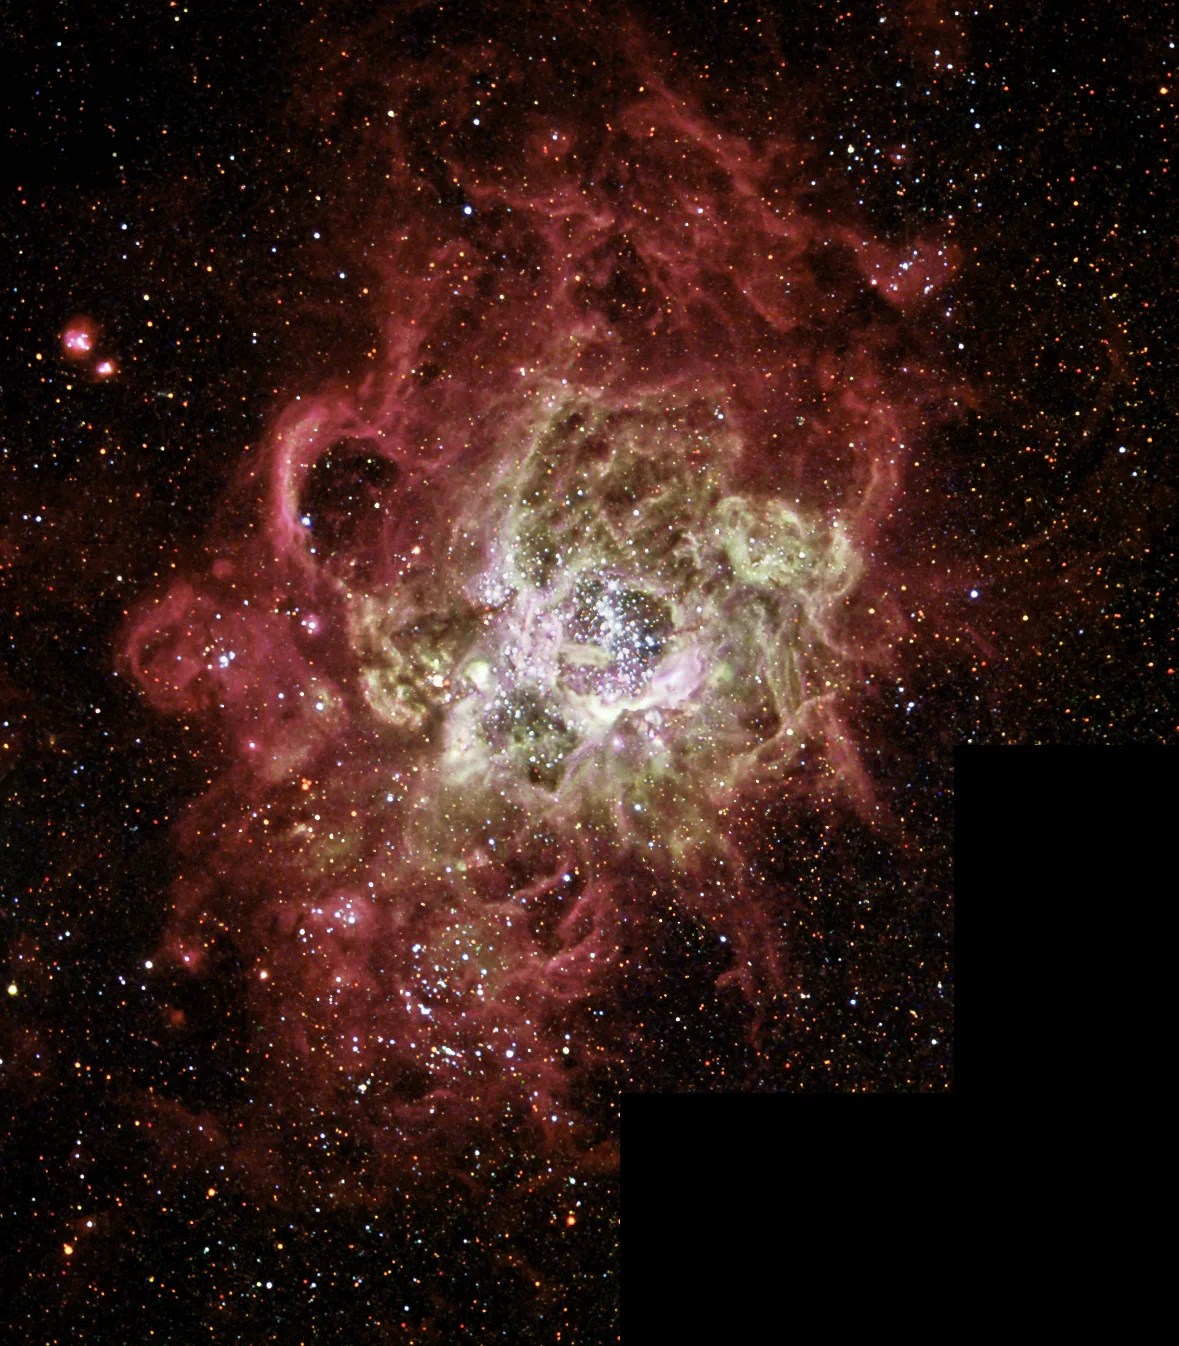 star-forming nebula NGC 604